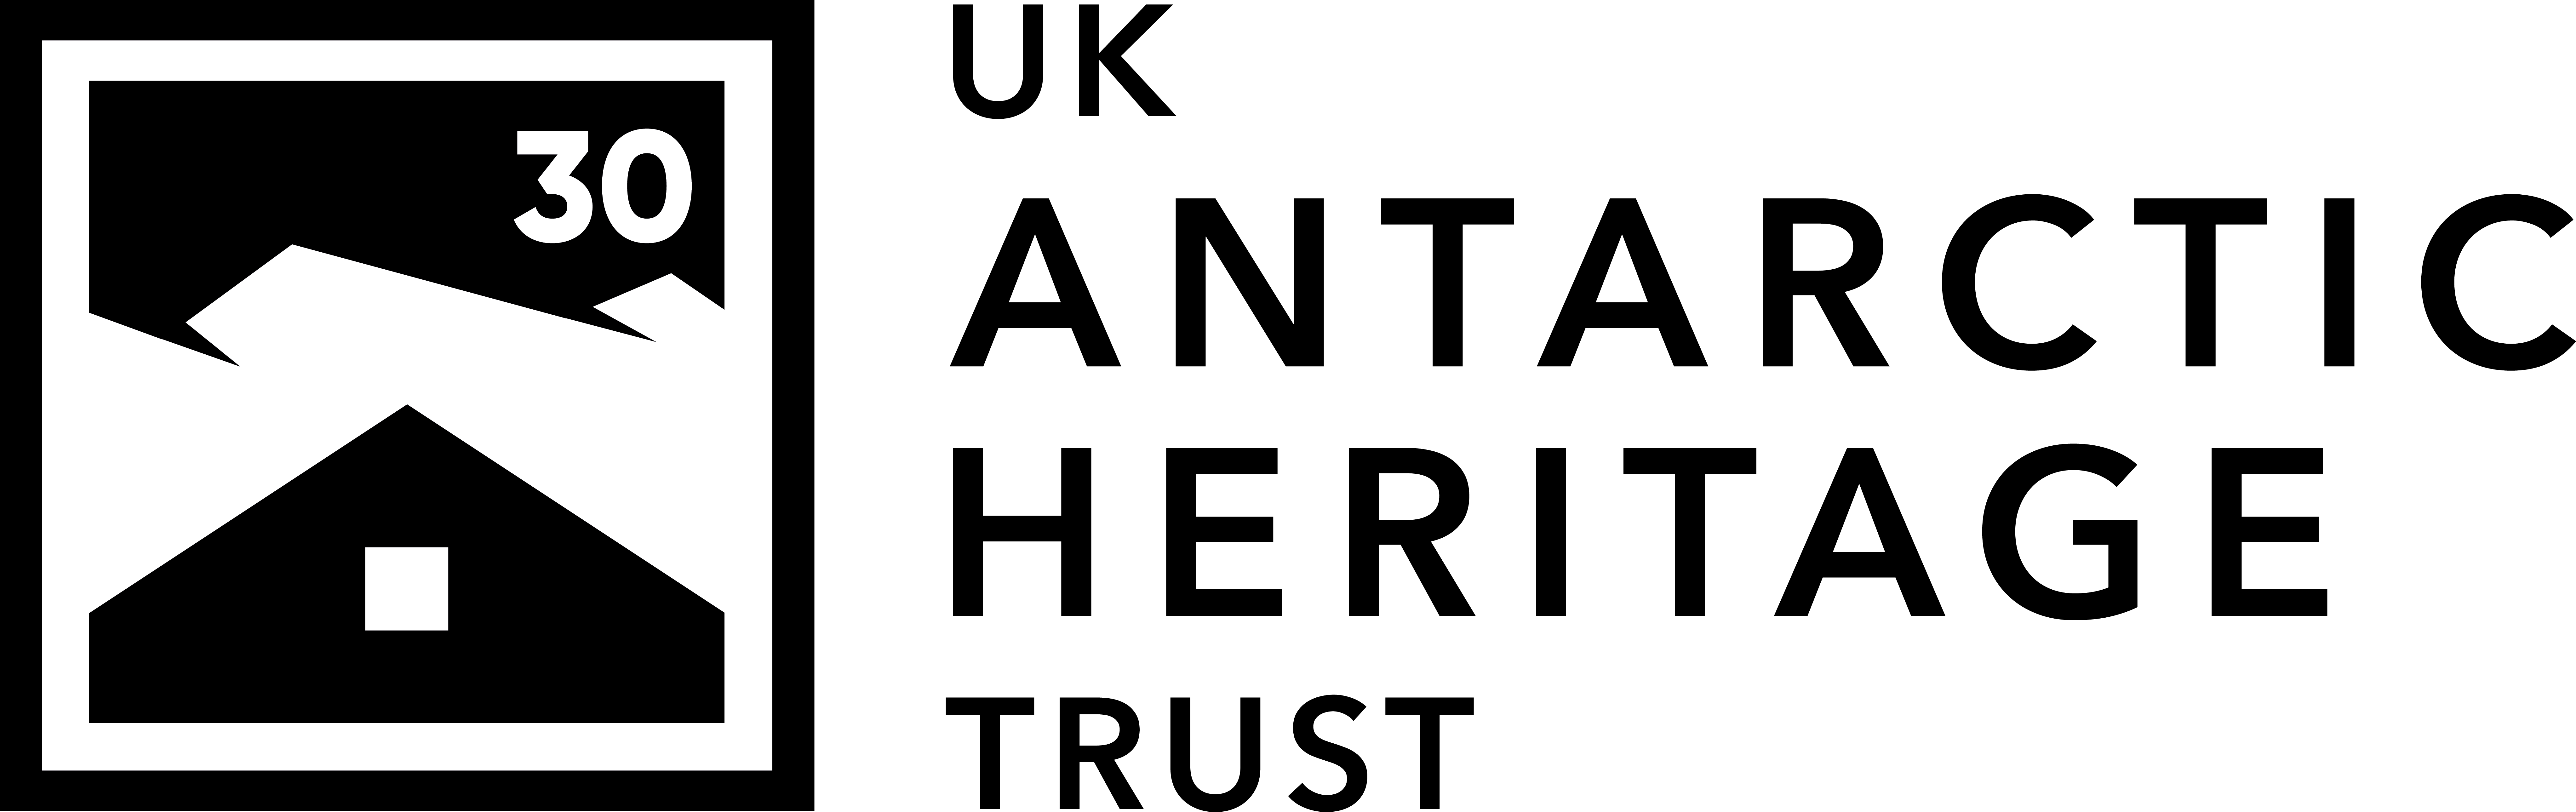 UKAHT logo